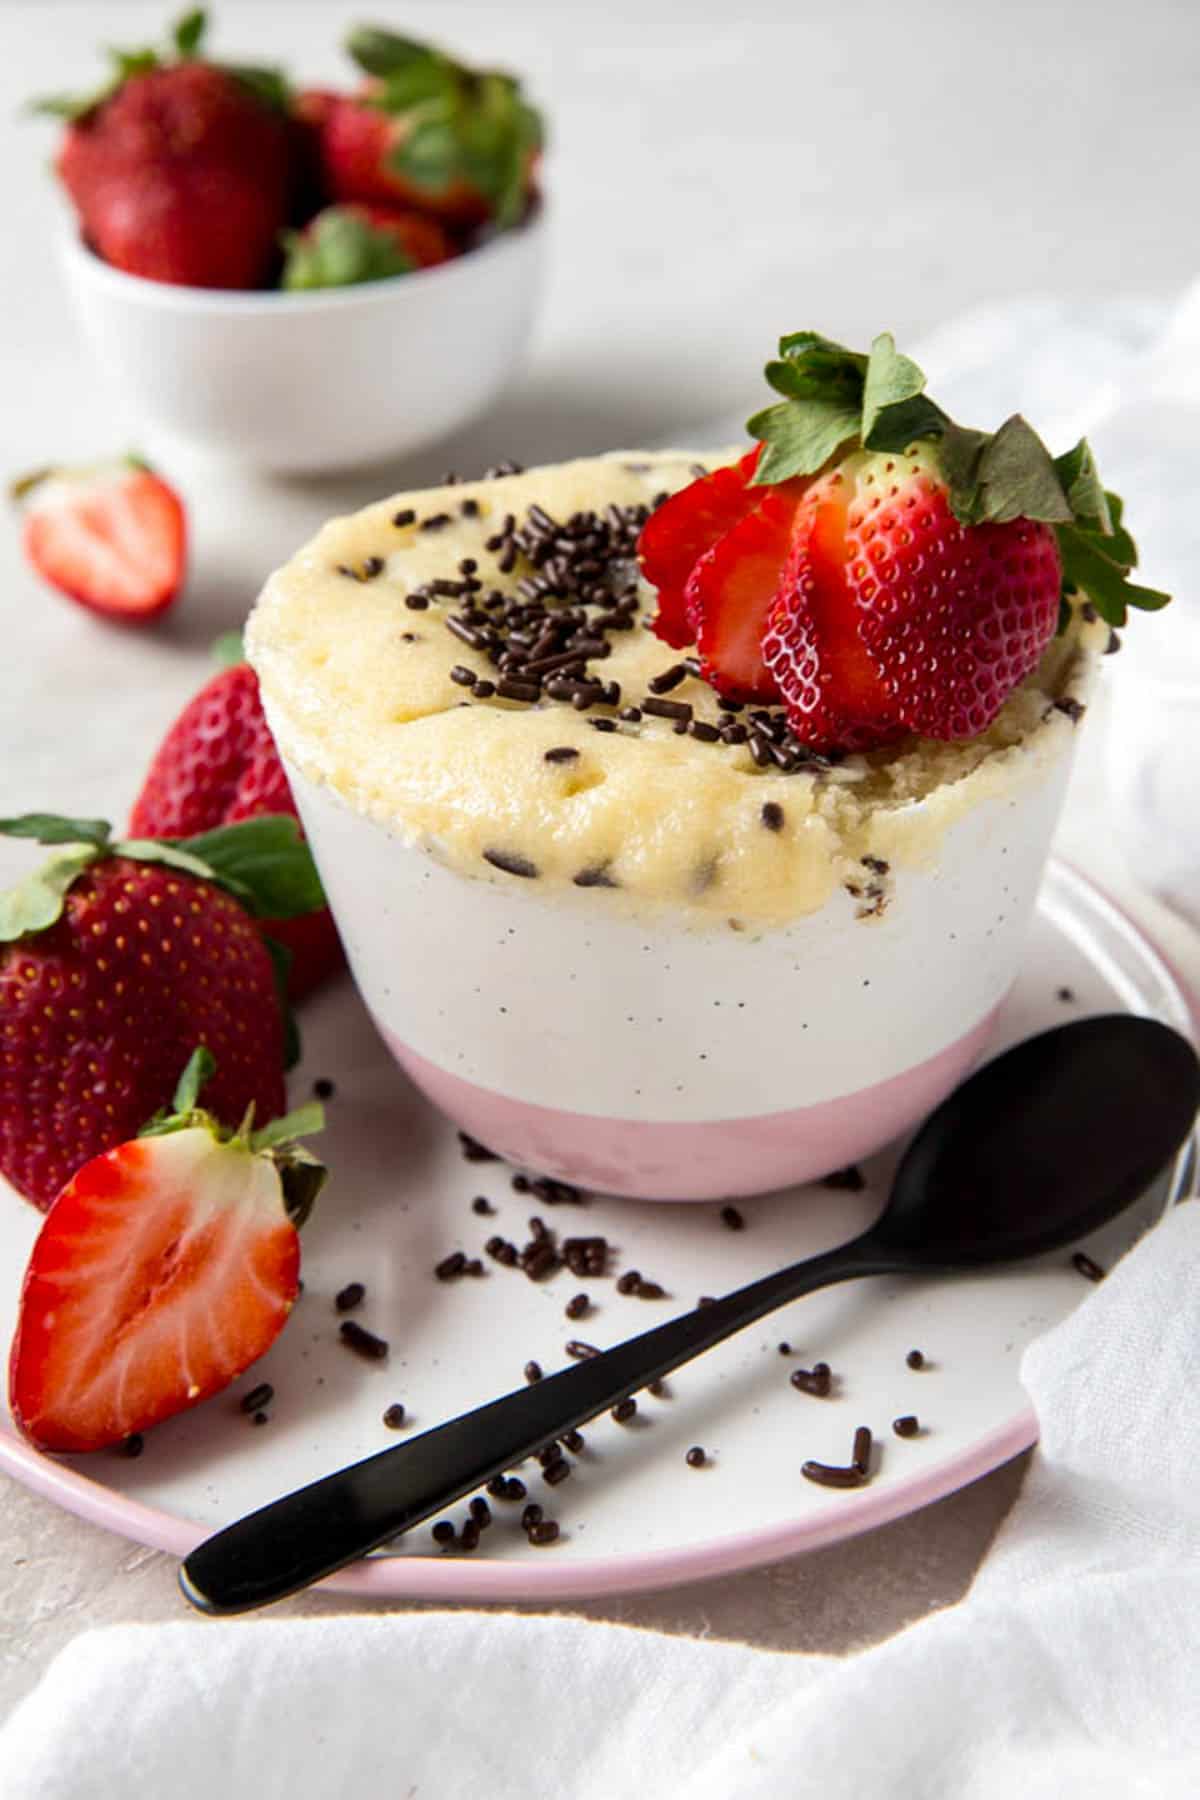 Mug cake à la vanille avec des paillettes supplémentaires et une fraise coupée en tranches sur le dessus. Une cuillère est posée sur une assiette à côté du mug cake.